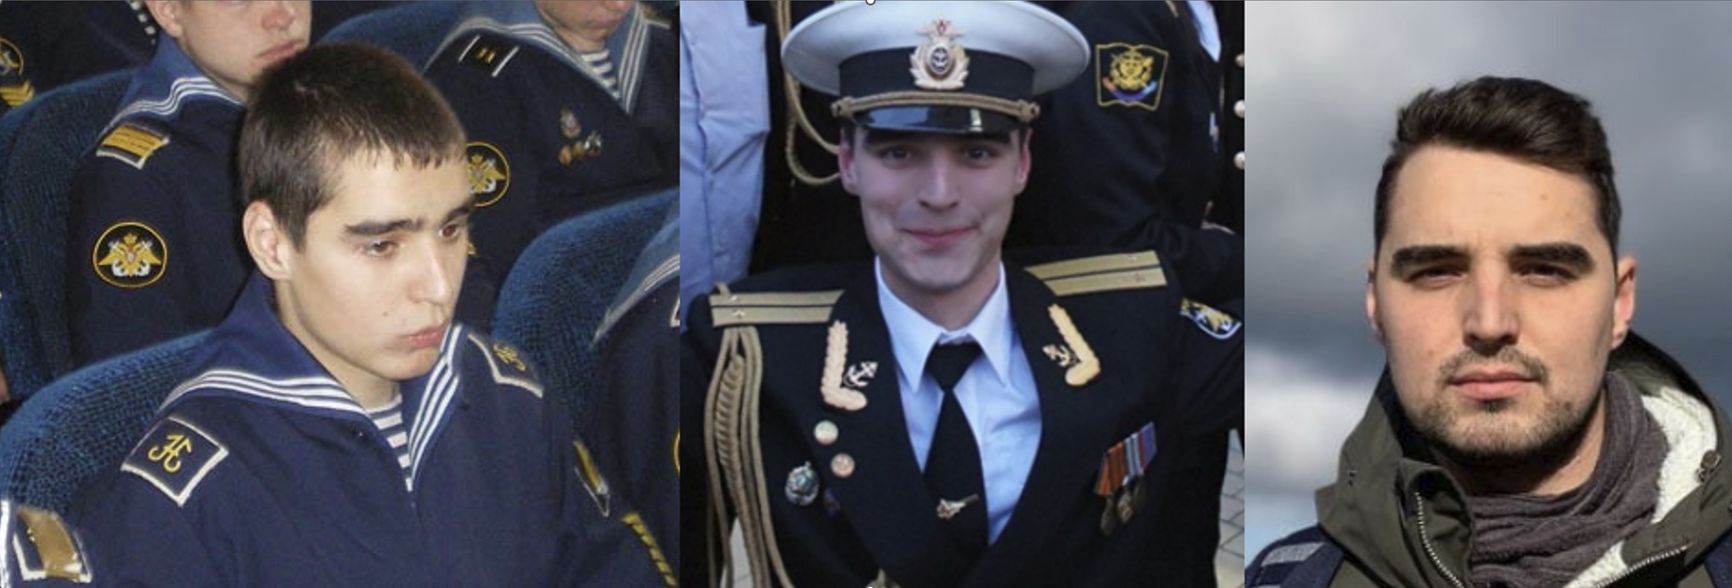 Майор Матвей Любавин. Слева: выпускной 2009 года. В центре: 2014 год, выпуск Военно-морской академии. Справа: фото из резюме 2022 года